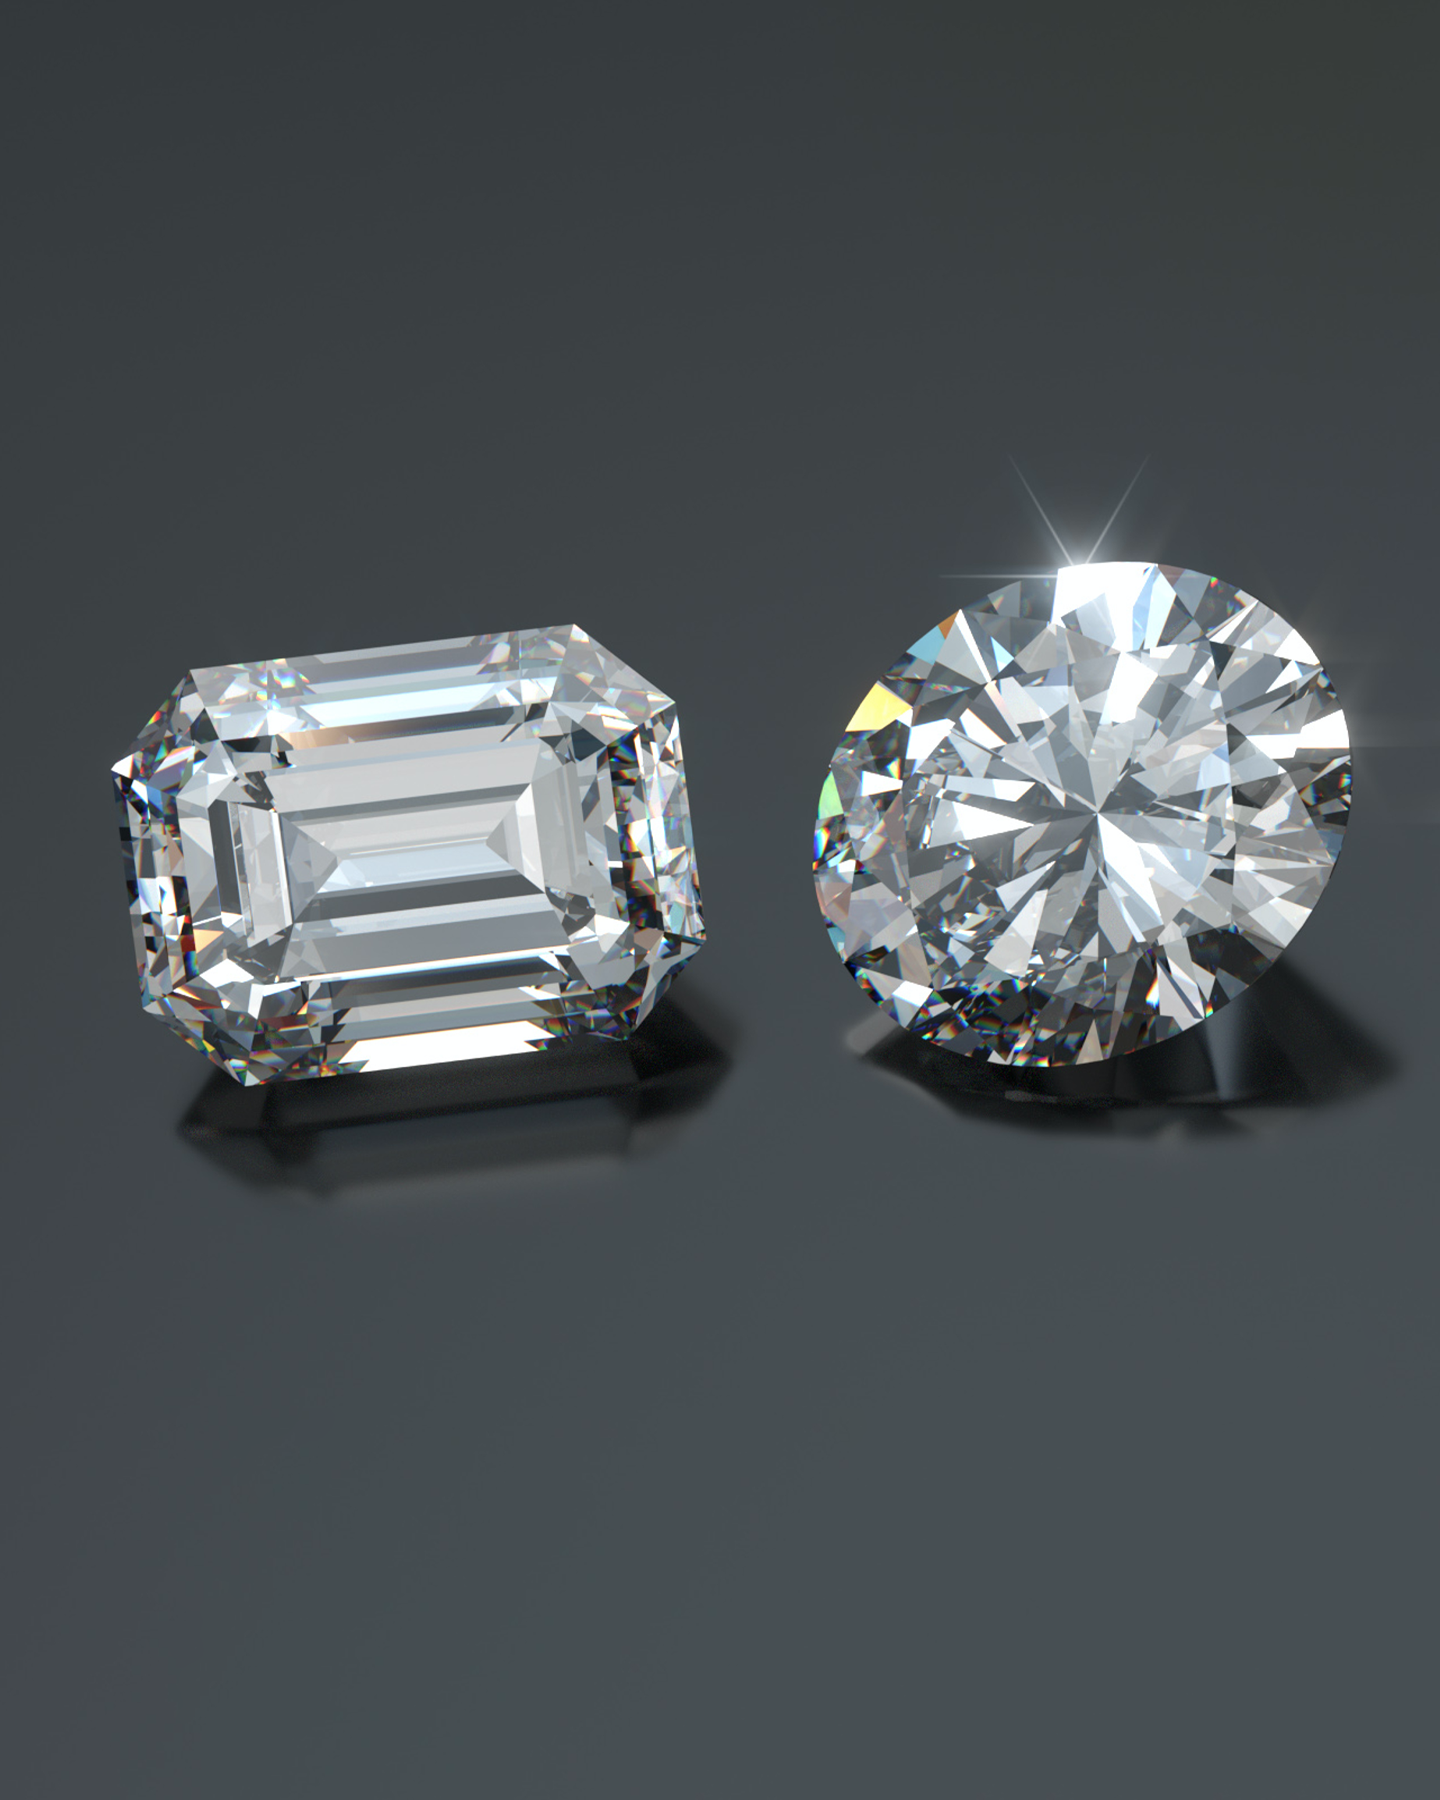 培育鑽石和開採鑽石的差異